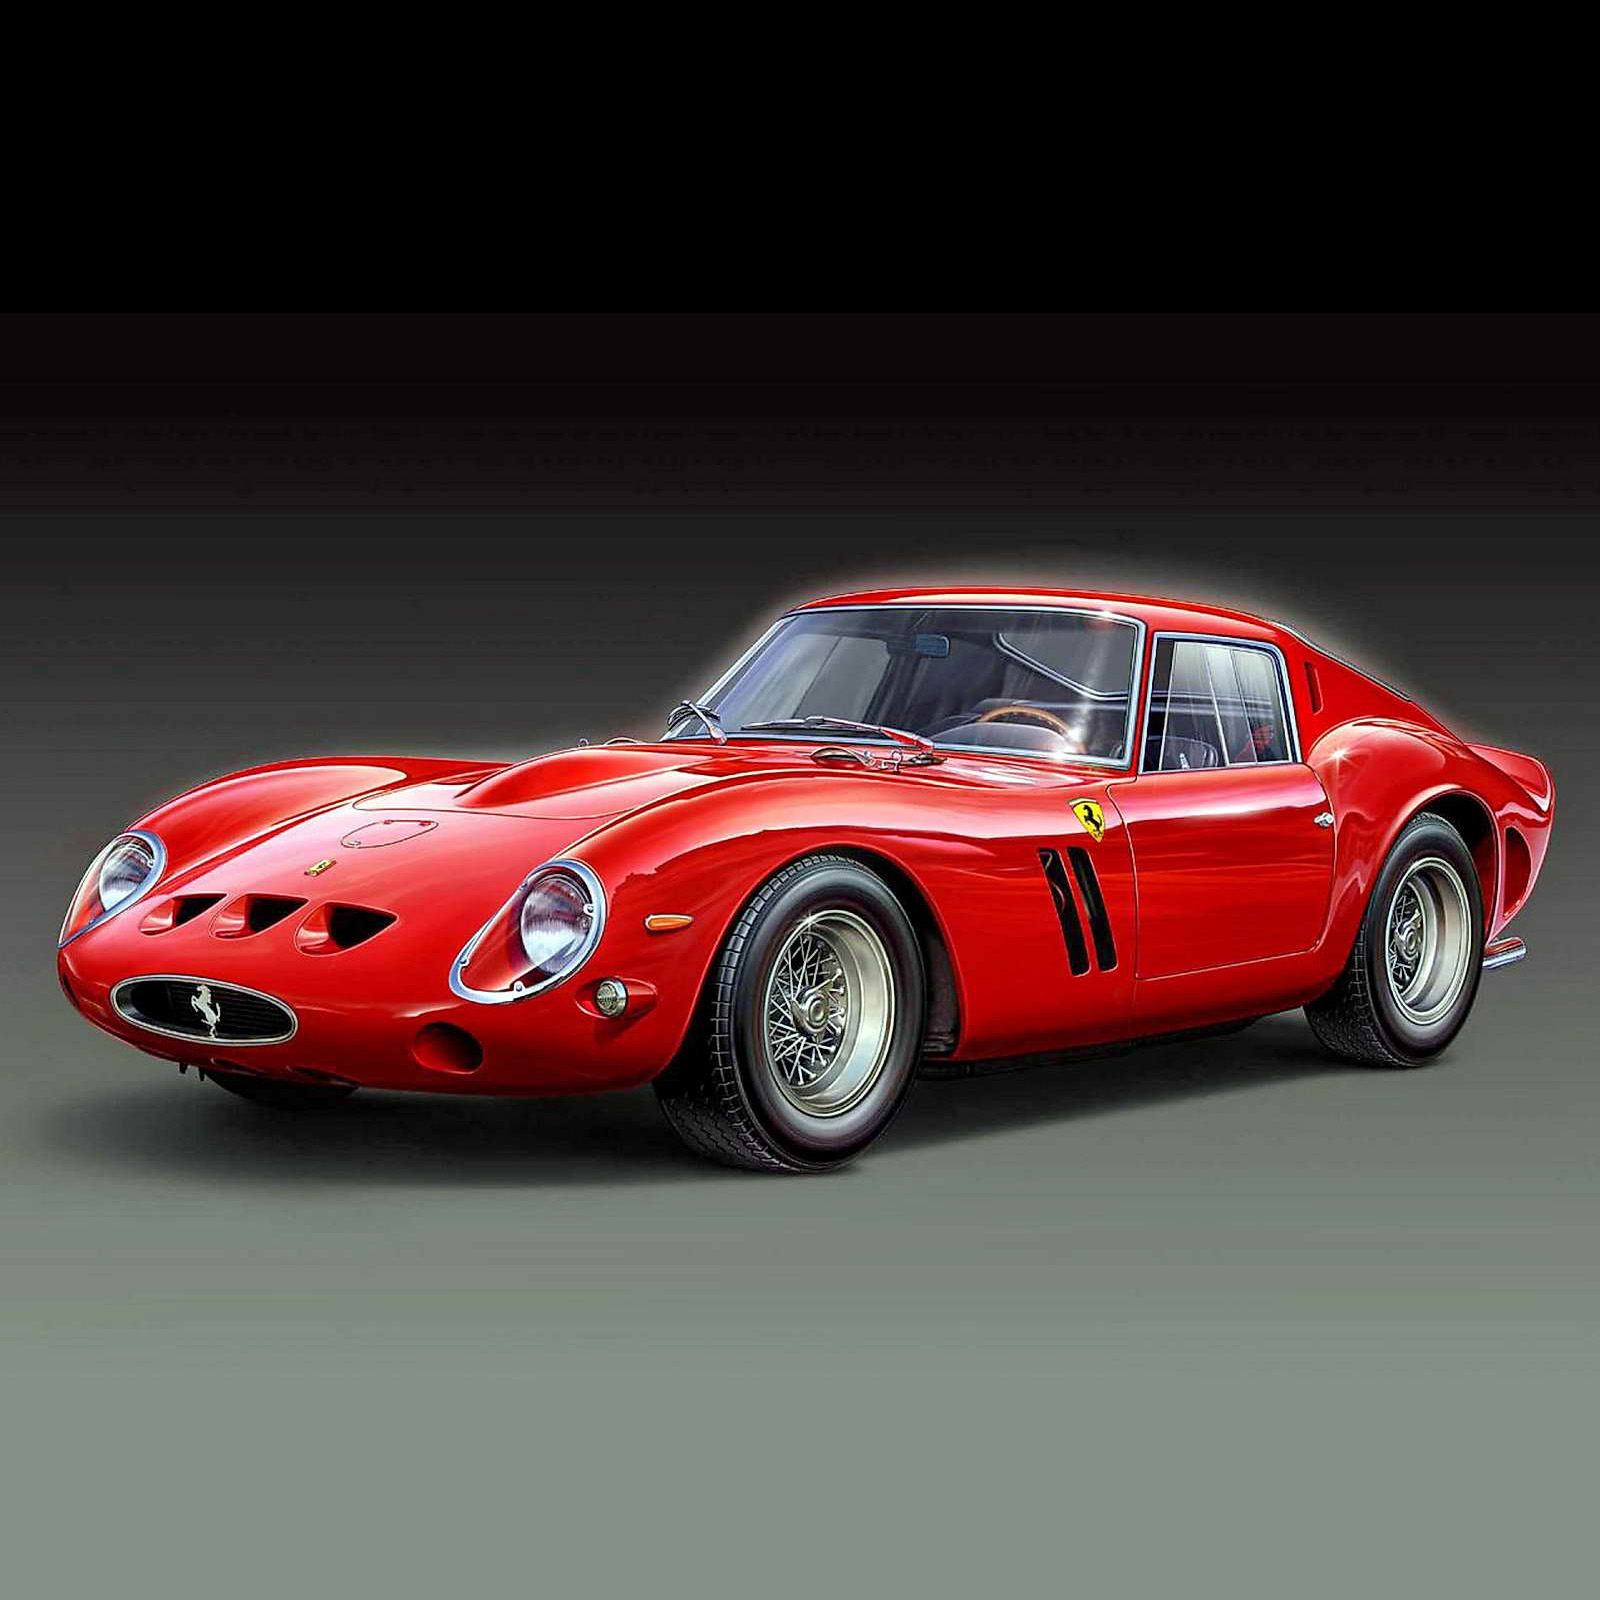 Ferrari 1962. Ferrari 250 GTO. Ferrari 250 GTO 1963. Ferrari 250 GTO 1962. Ferrari 250 GTO 1962 года.